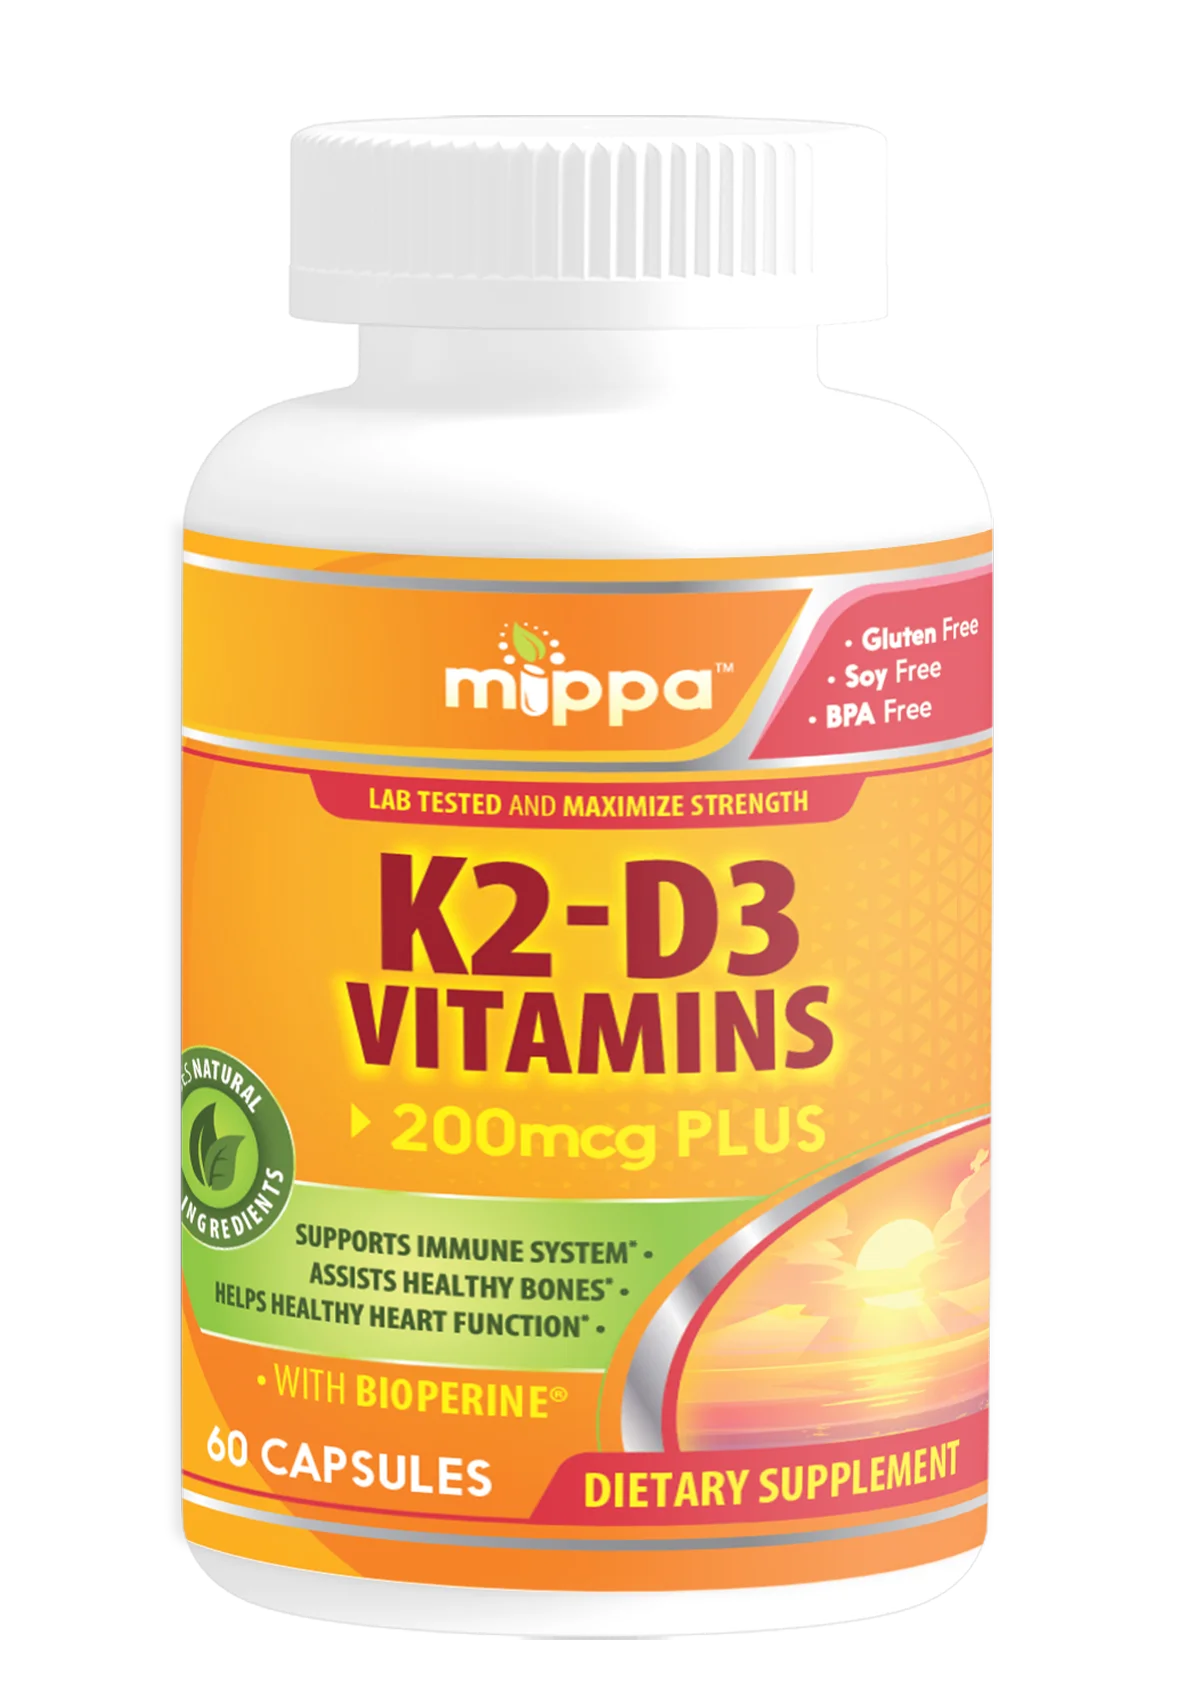 K2-D3 Vitamins Capsules